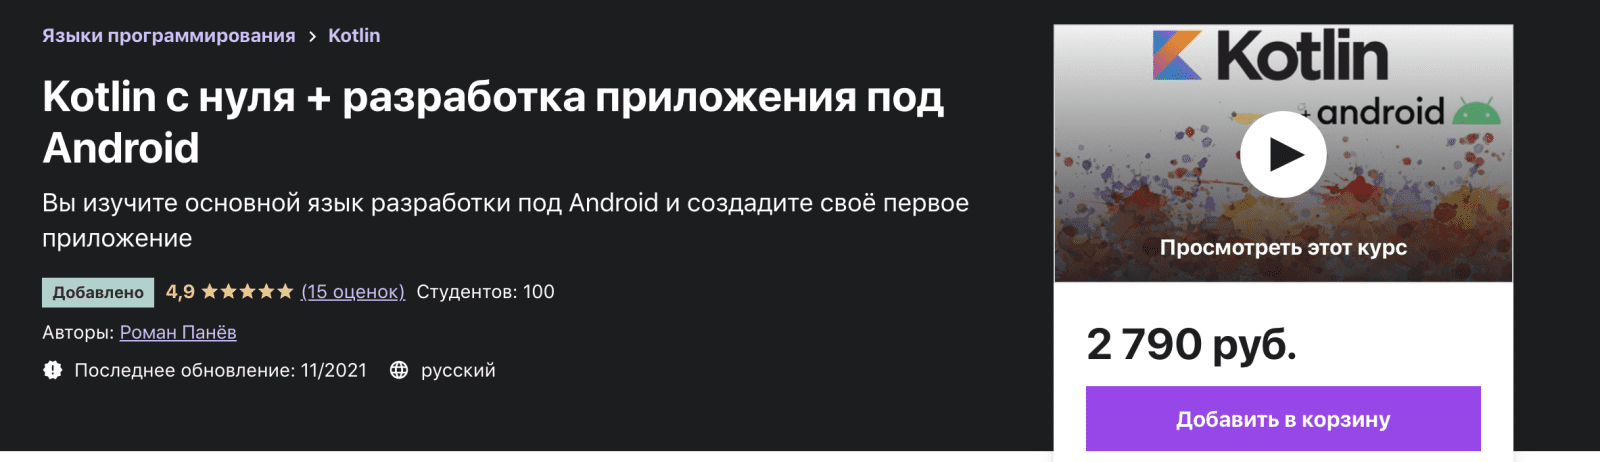 Разработка android приложений с нуля kotlin. Котлин с нуля. Котлин разработка под андроид стажировка Екатеринбург.